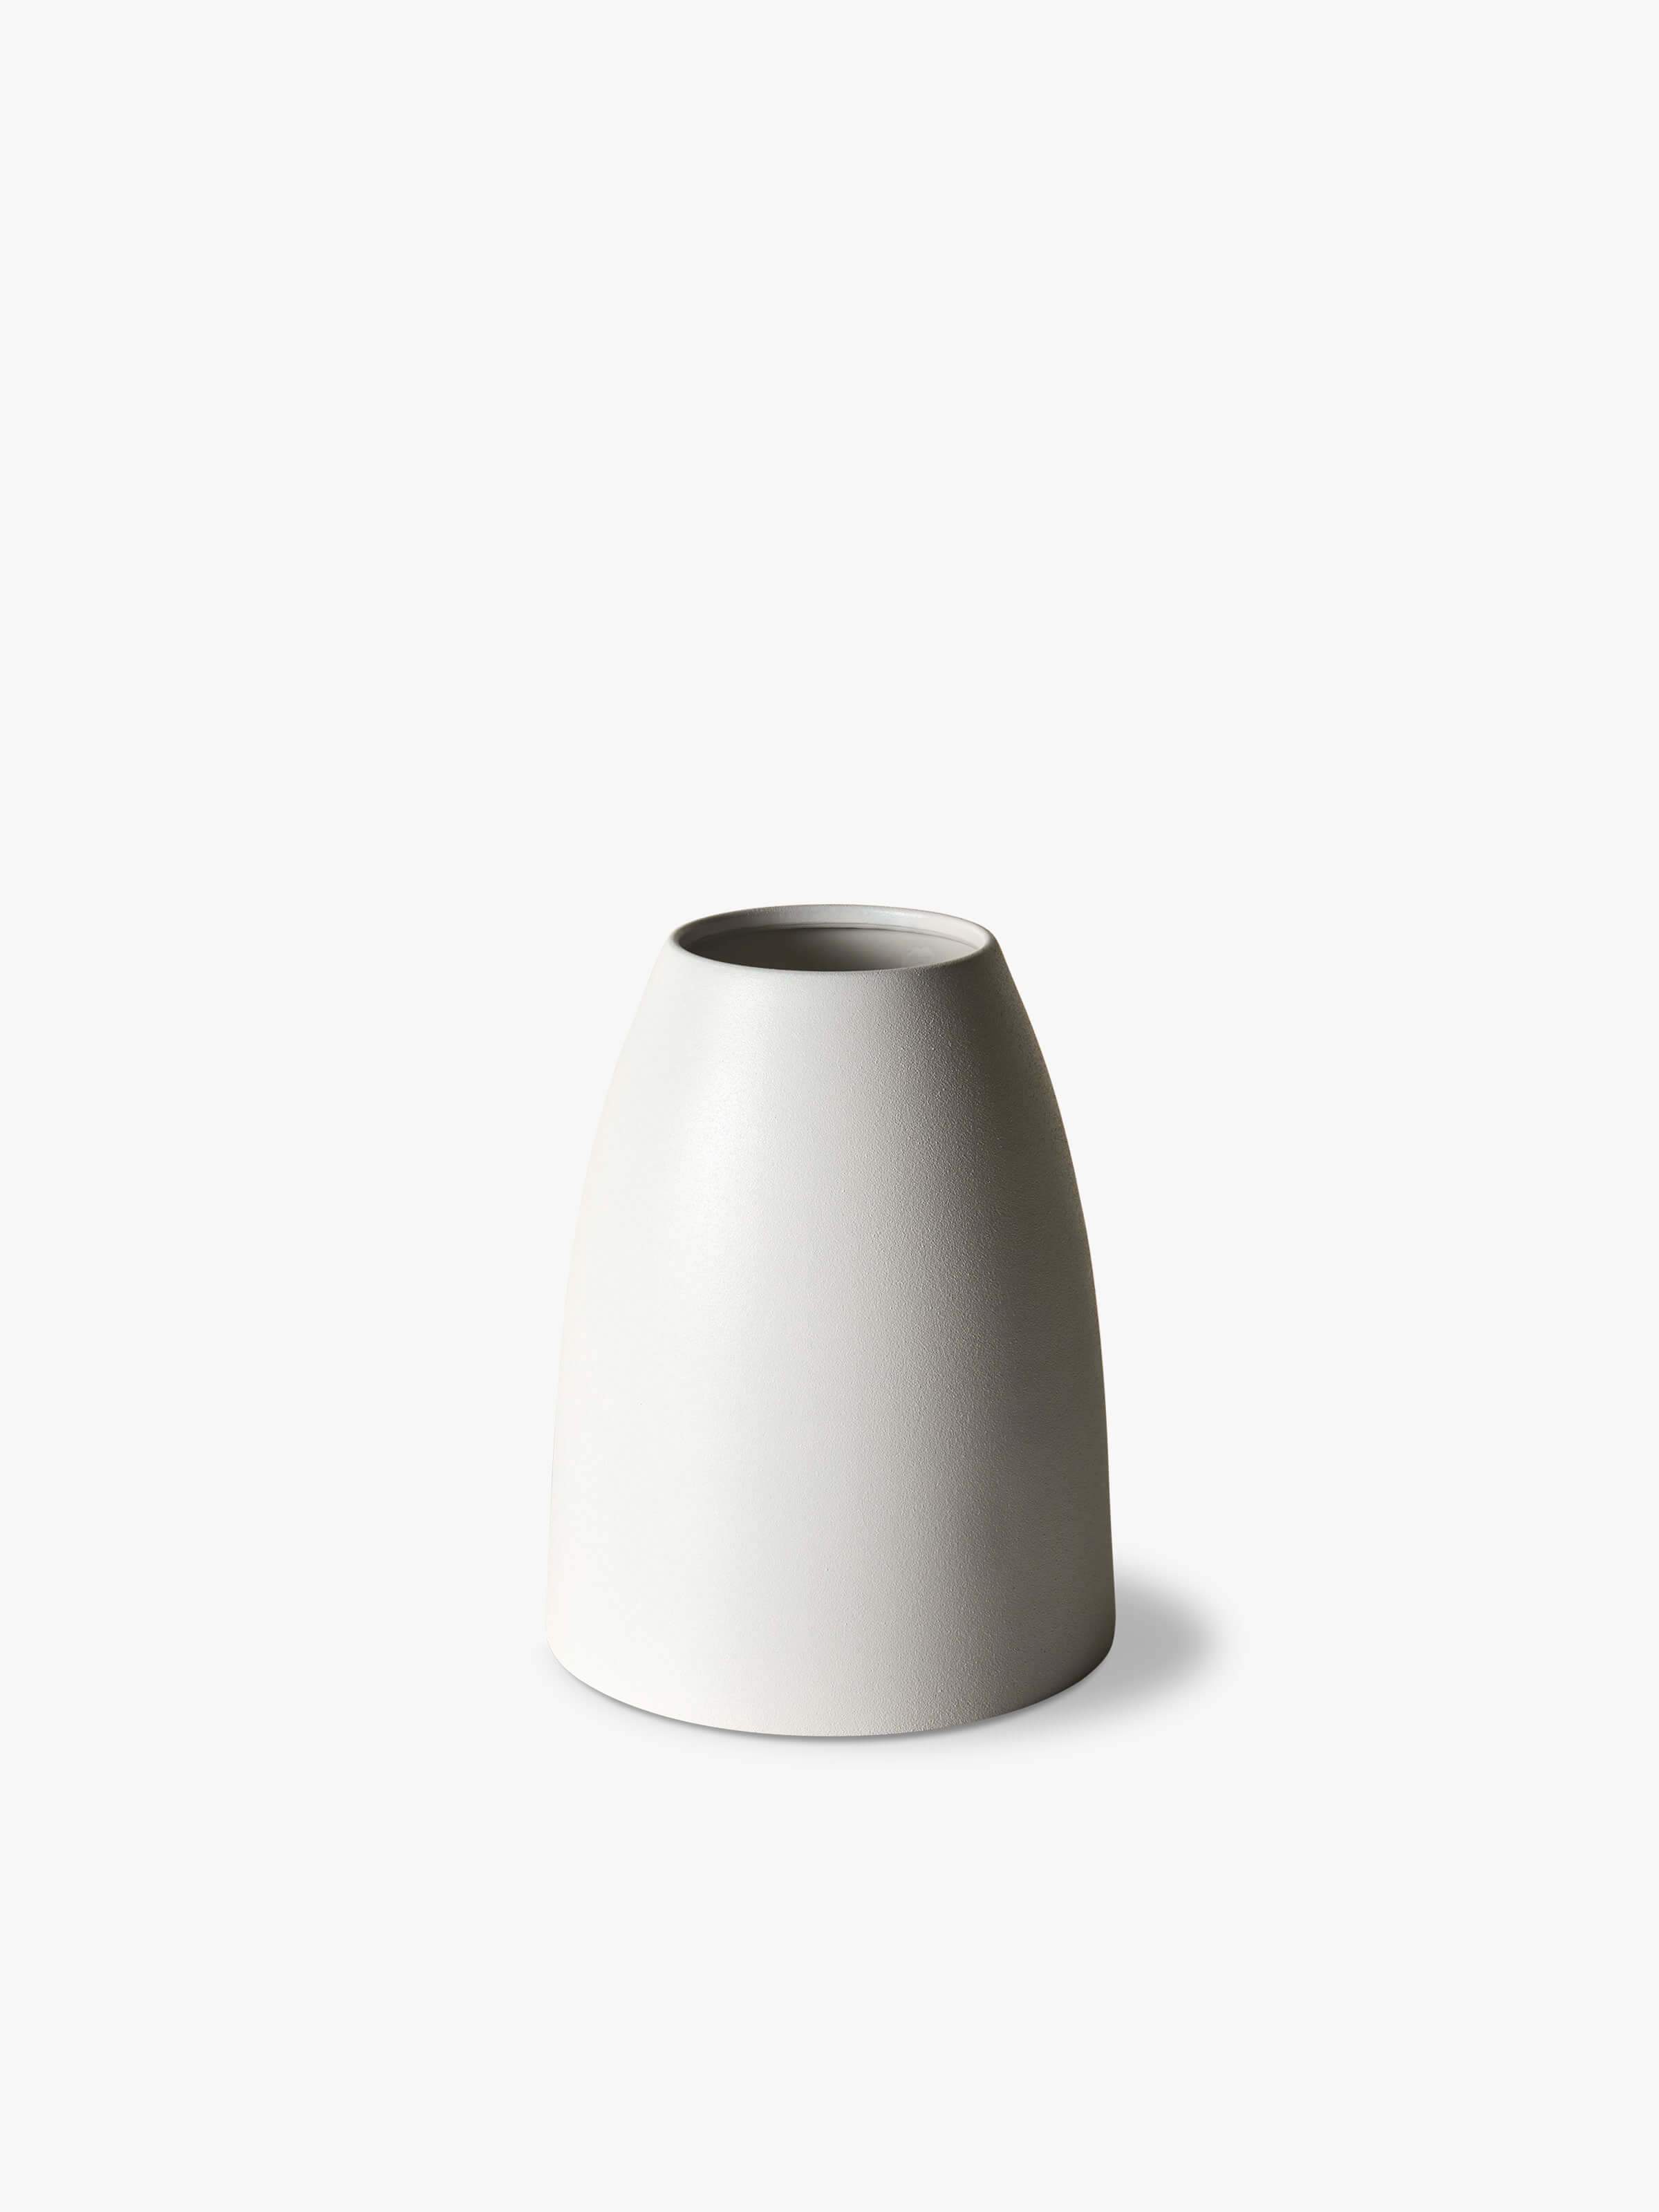 Mona Cone Vase - Chalk Vase 2020 